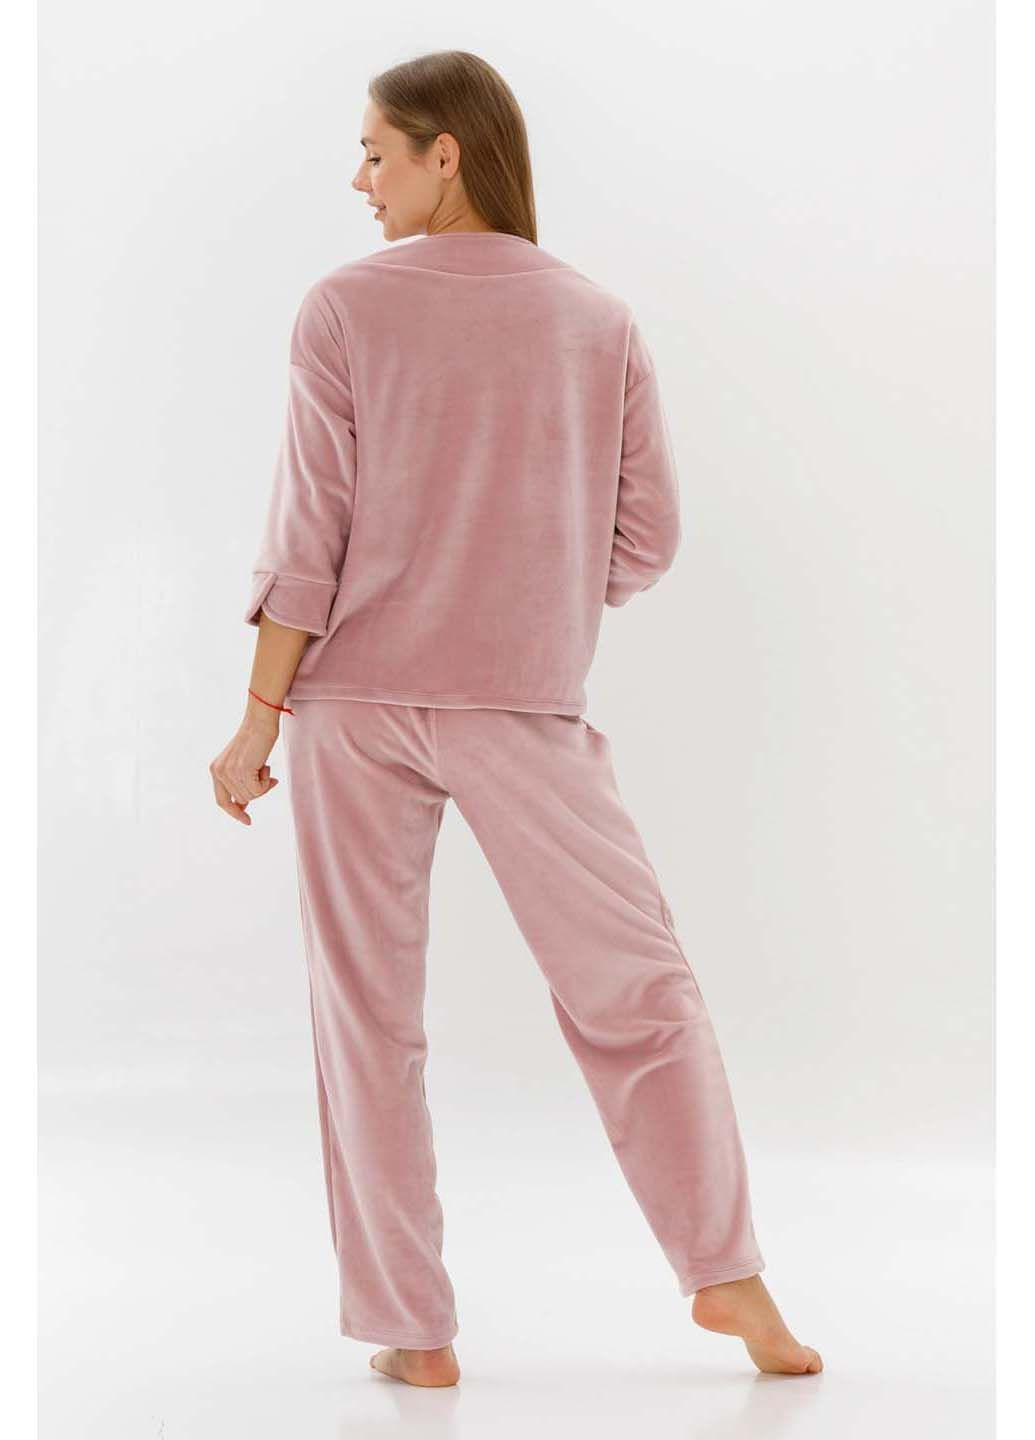 Розовая пижама MA.pajama AMELIE